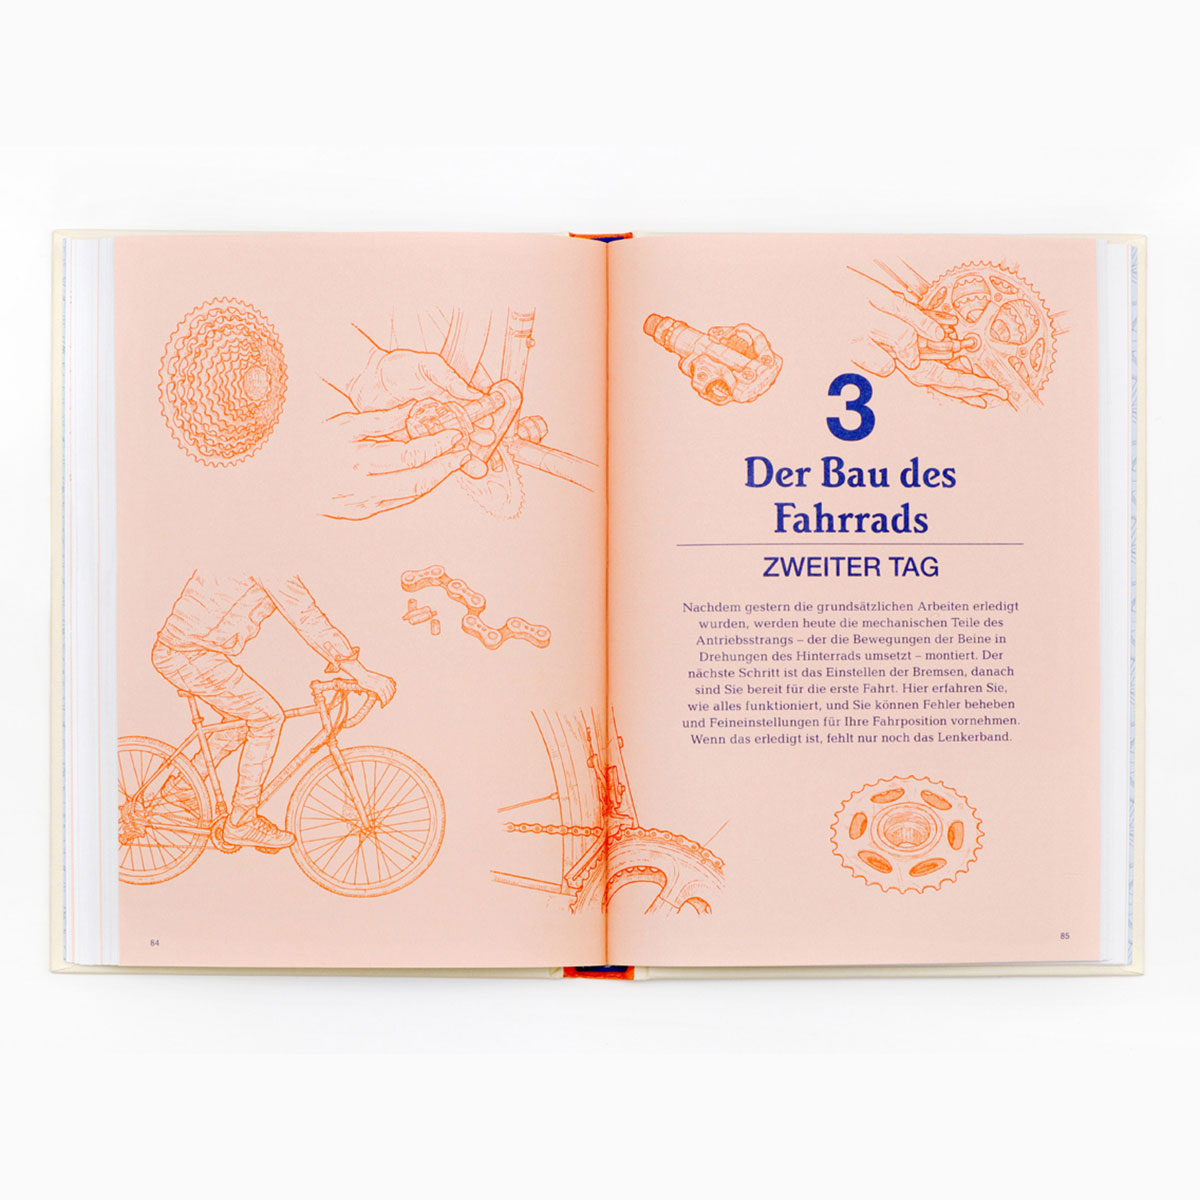 Das perfekte Fahrrad selber bauen - eine detaillierte Anleitung zum Selberbauen an einem Wochenende, ausführlich illustriert und per Hand gezeichnet.